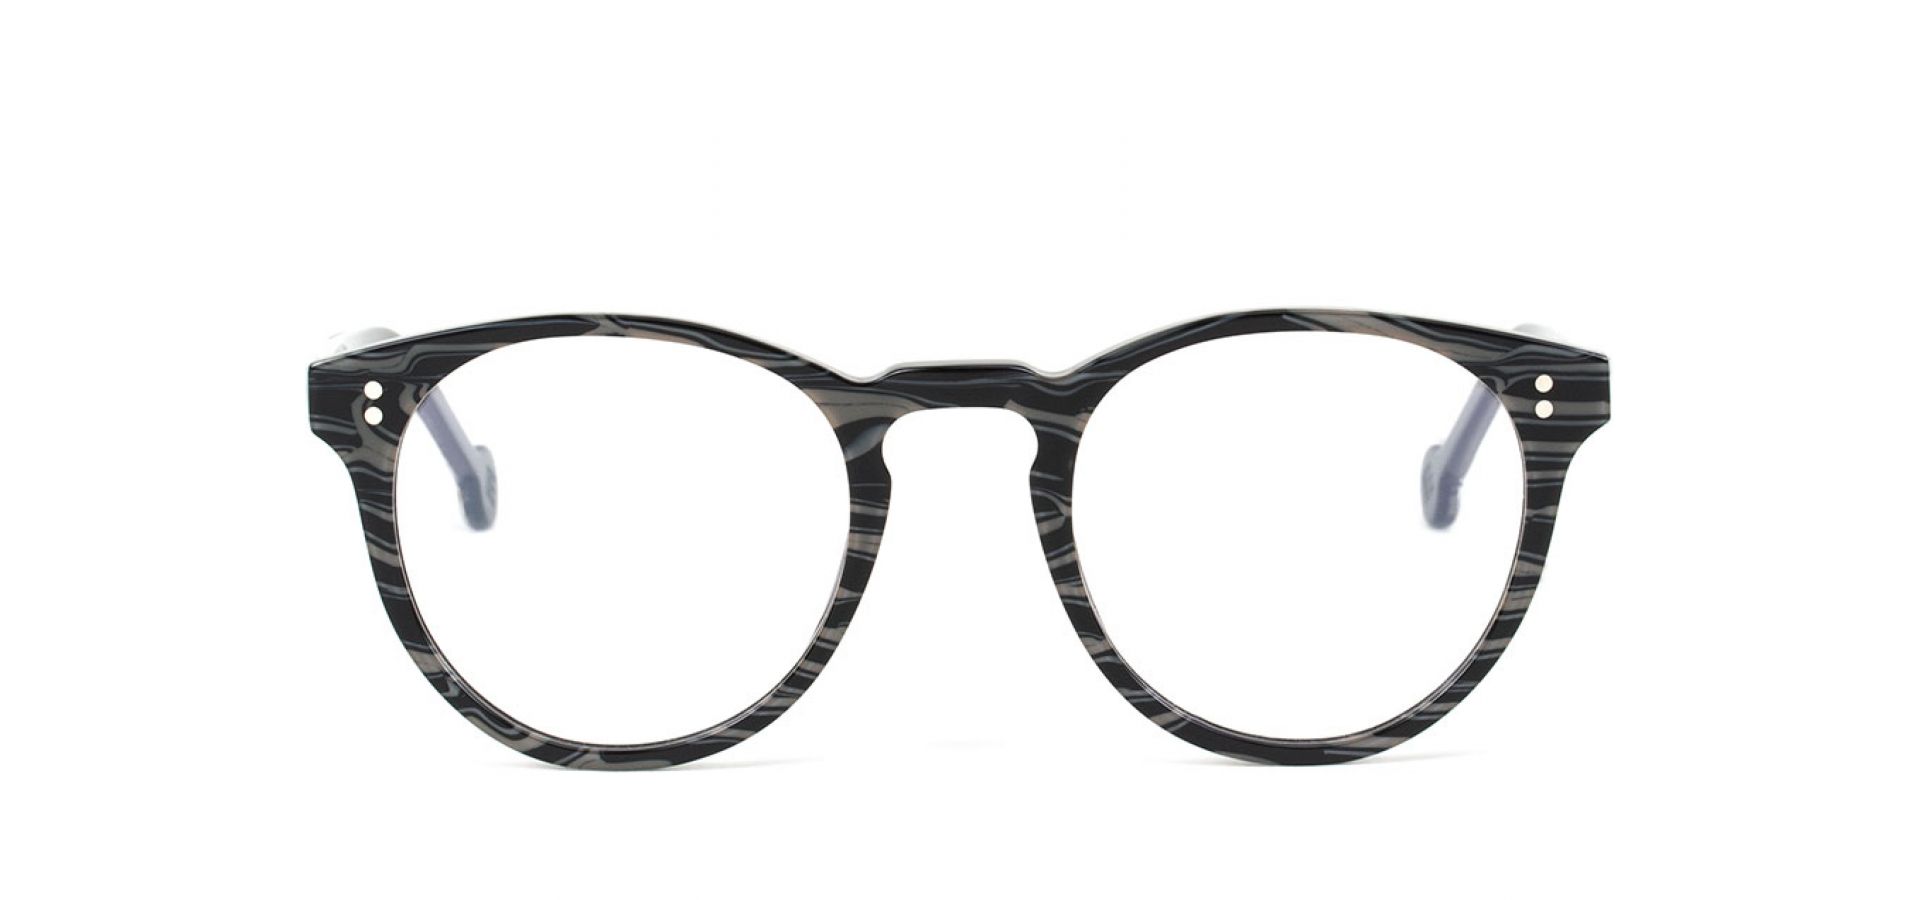 Korekcijska očala l. a. Eyeworks L.A. SZ953DS SATCHEL BLACK: Velikost: 46/21/145, Spol: unisex, Material: acetat